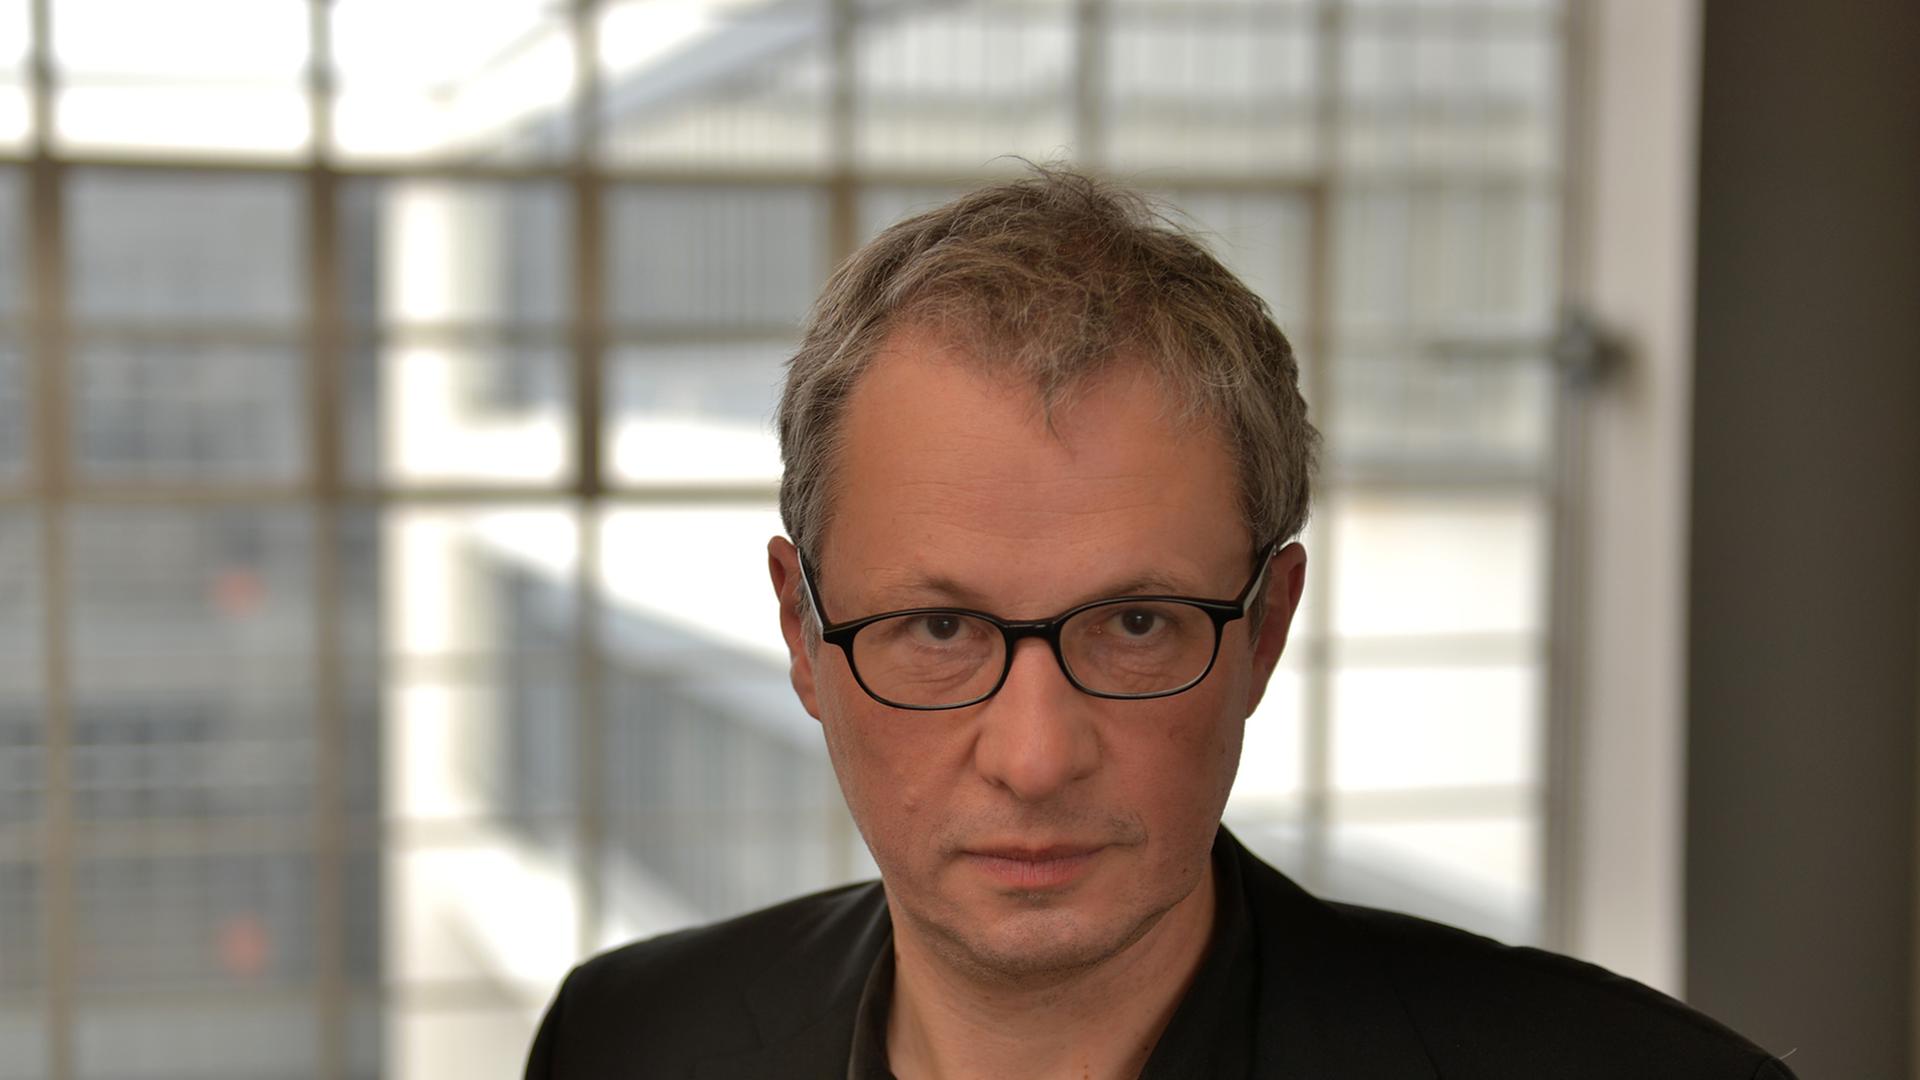 Der Direktor der Stiftung Bauhaus Dessau, Philipp Oswalt, aufgenommen am 27.02.2014 im Bauhaus in Dessau-Roßlau (Sachsen-Anhalt). Oswalt bewirbt sich jetzt für eine weitere Amtszeit. Der Stiftungsrat hatte 2013 eine Neuausschreibung der Stelle beschlossen.